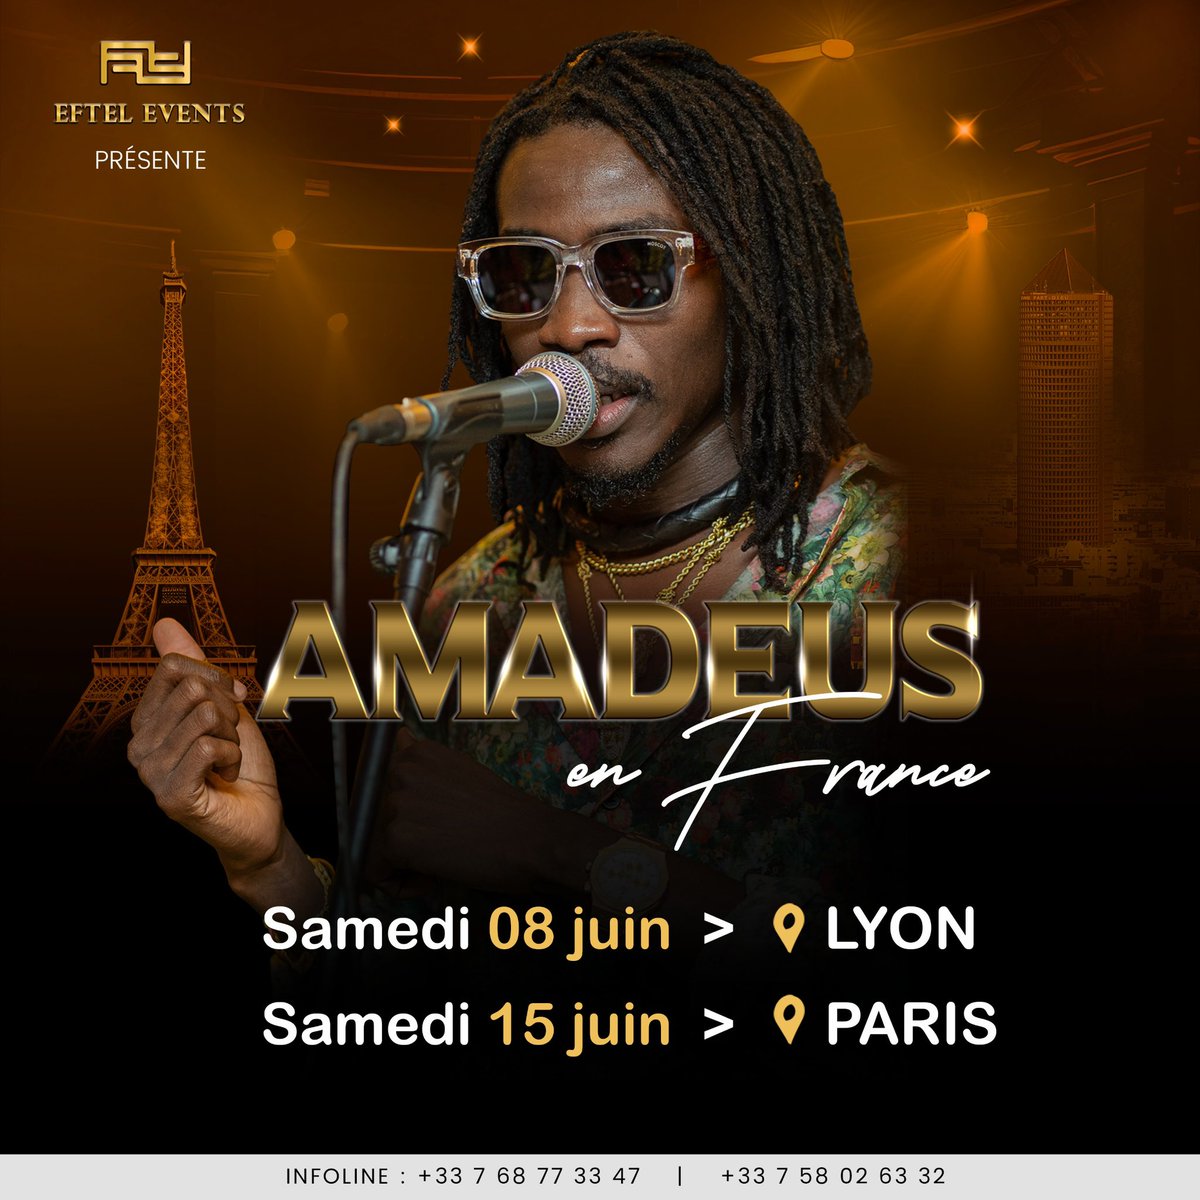 Vous étiez nombreux à réclamer de nouvelles dates en France 🇫🇷, je vous informe que je serais de retour en JUIN. 
Cette fois-ci, dans 2 villes : PARIS & LYON …
Taguel wa Paris ak Lyon ma xool 😌
Cc @Sata_bae 
#Amadeus
#MassambaWalo
#AmadeusEnFrance